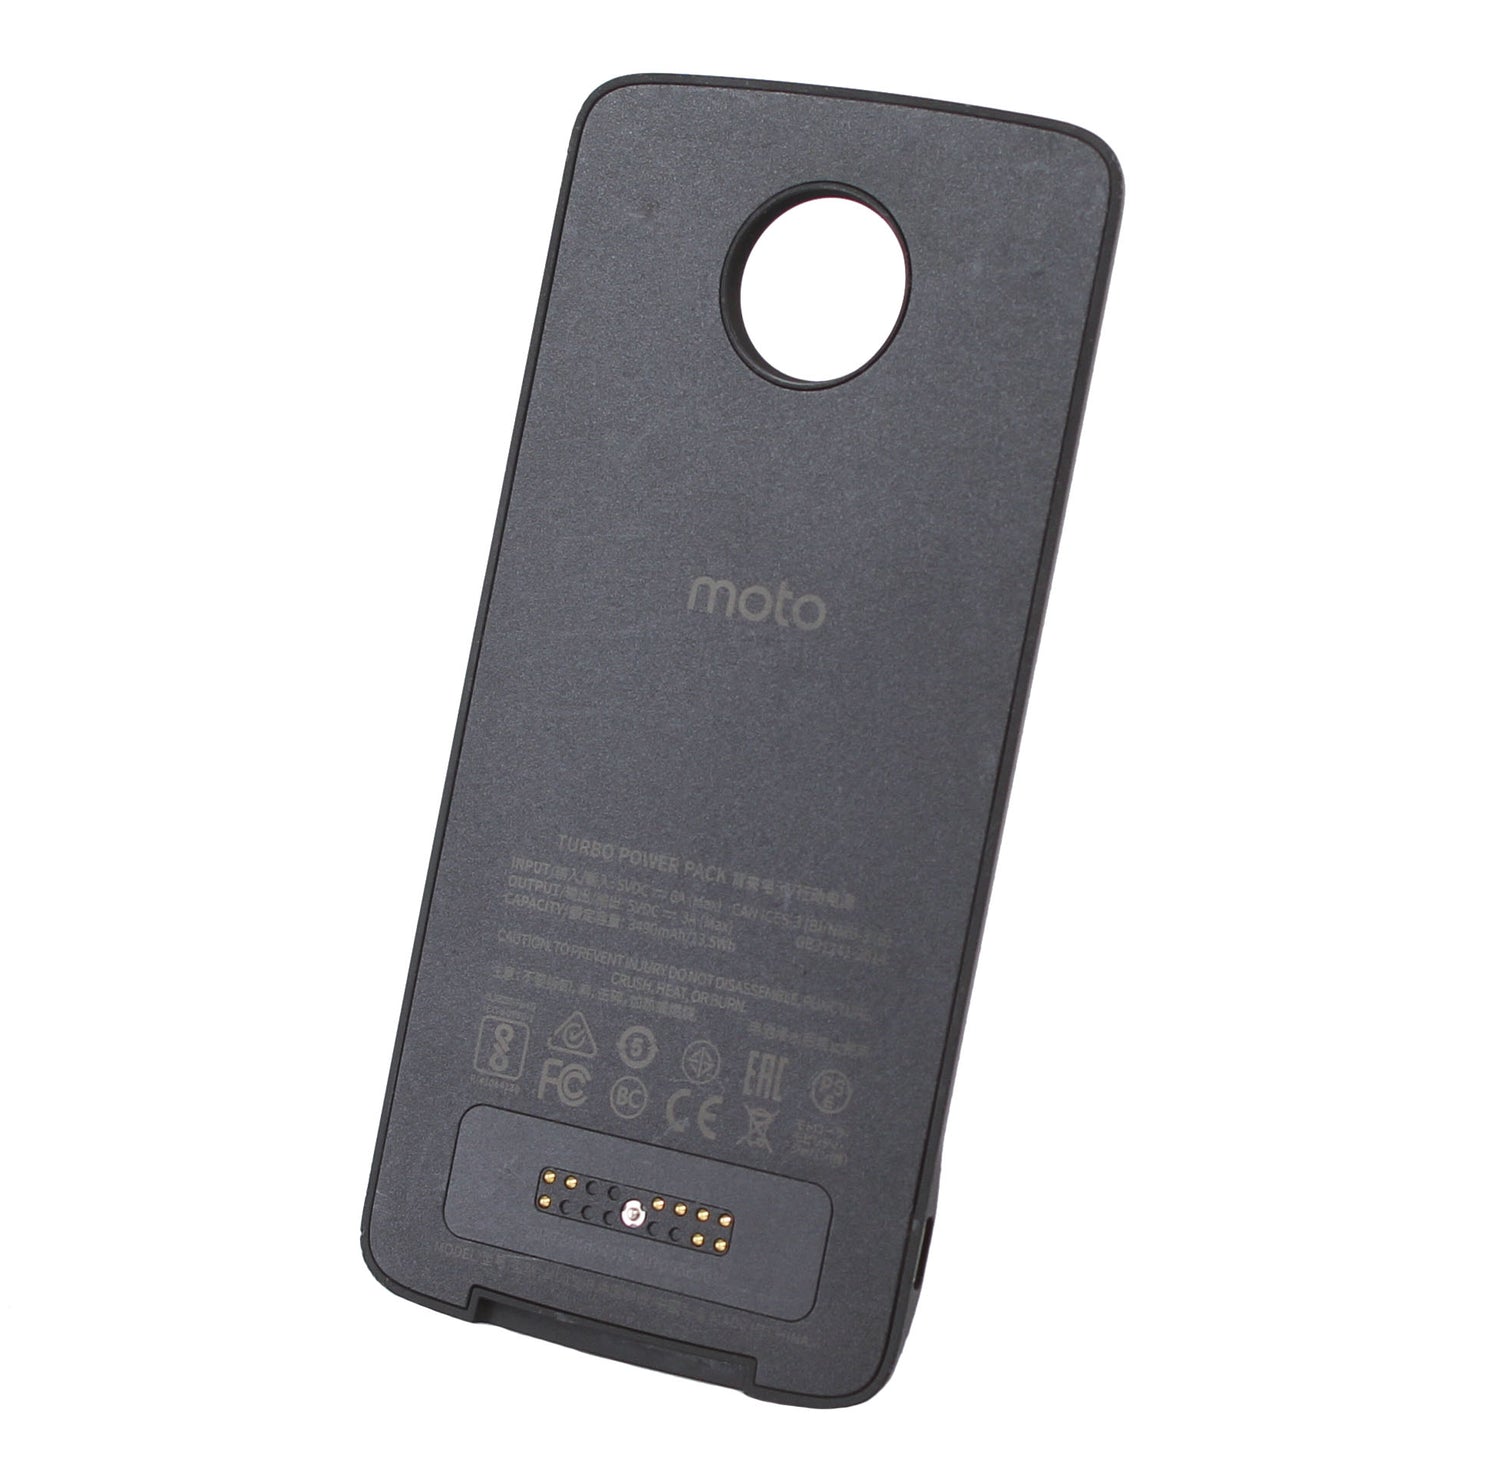 Motorola Moto Mods Turbopower Pack 3490mah - Black (Certified Refurbished)